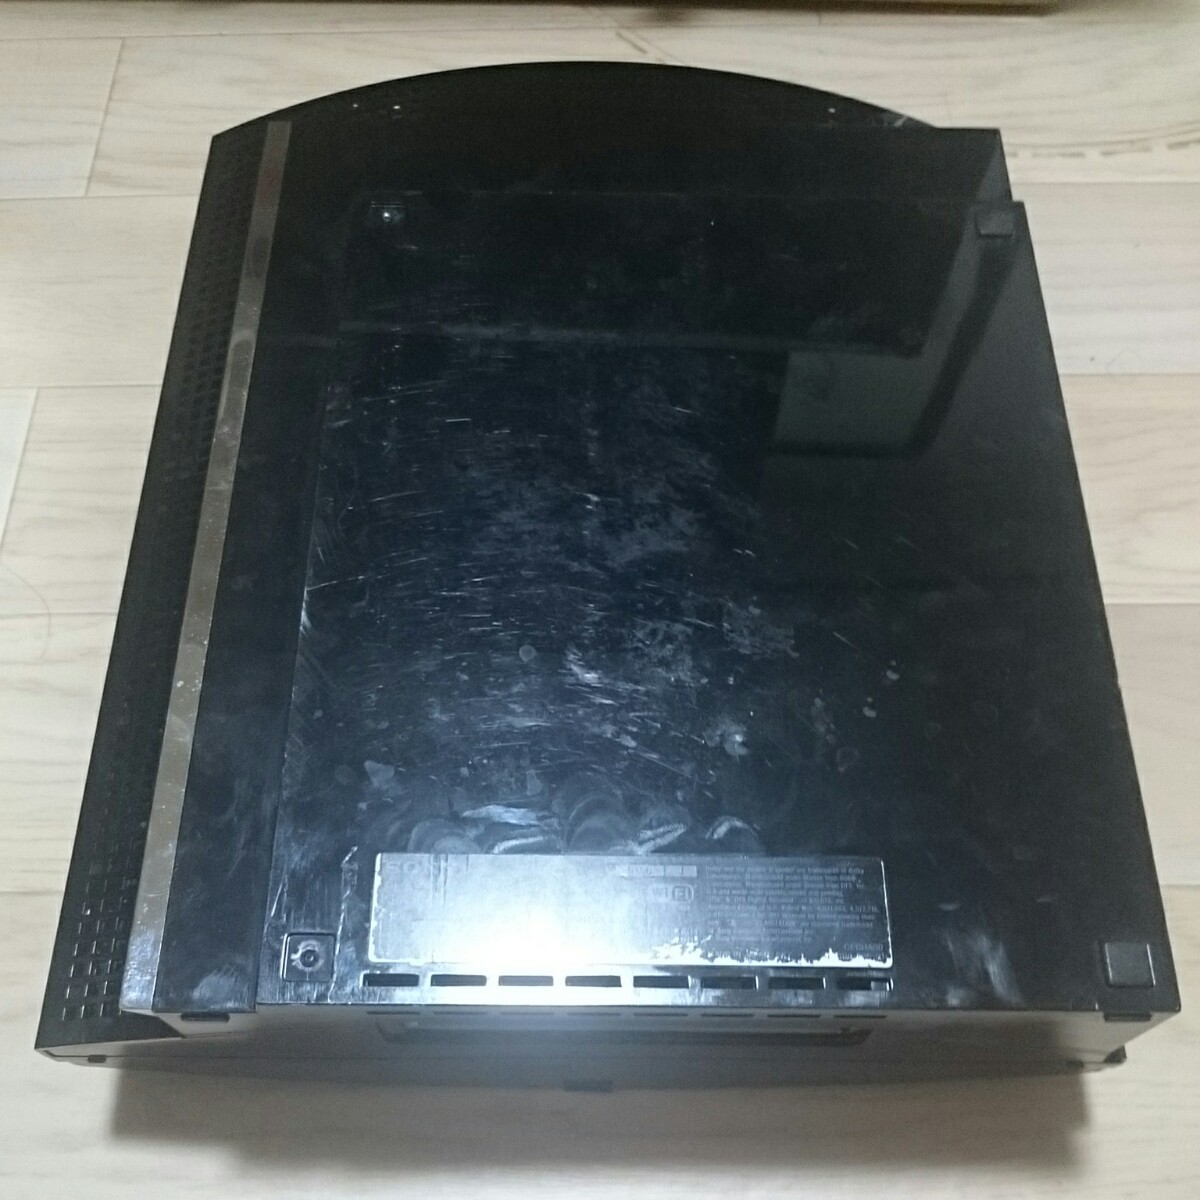 ソニー PS3 初期型 CECHA00×1 CECHB00×1 ジャンク